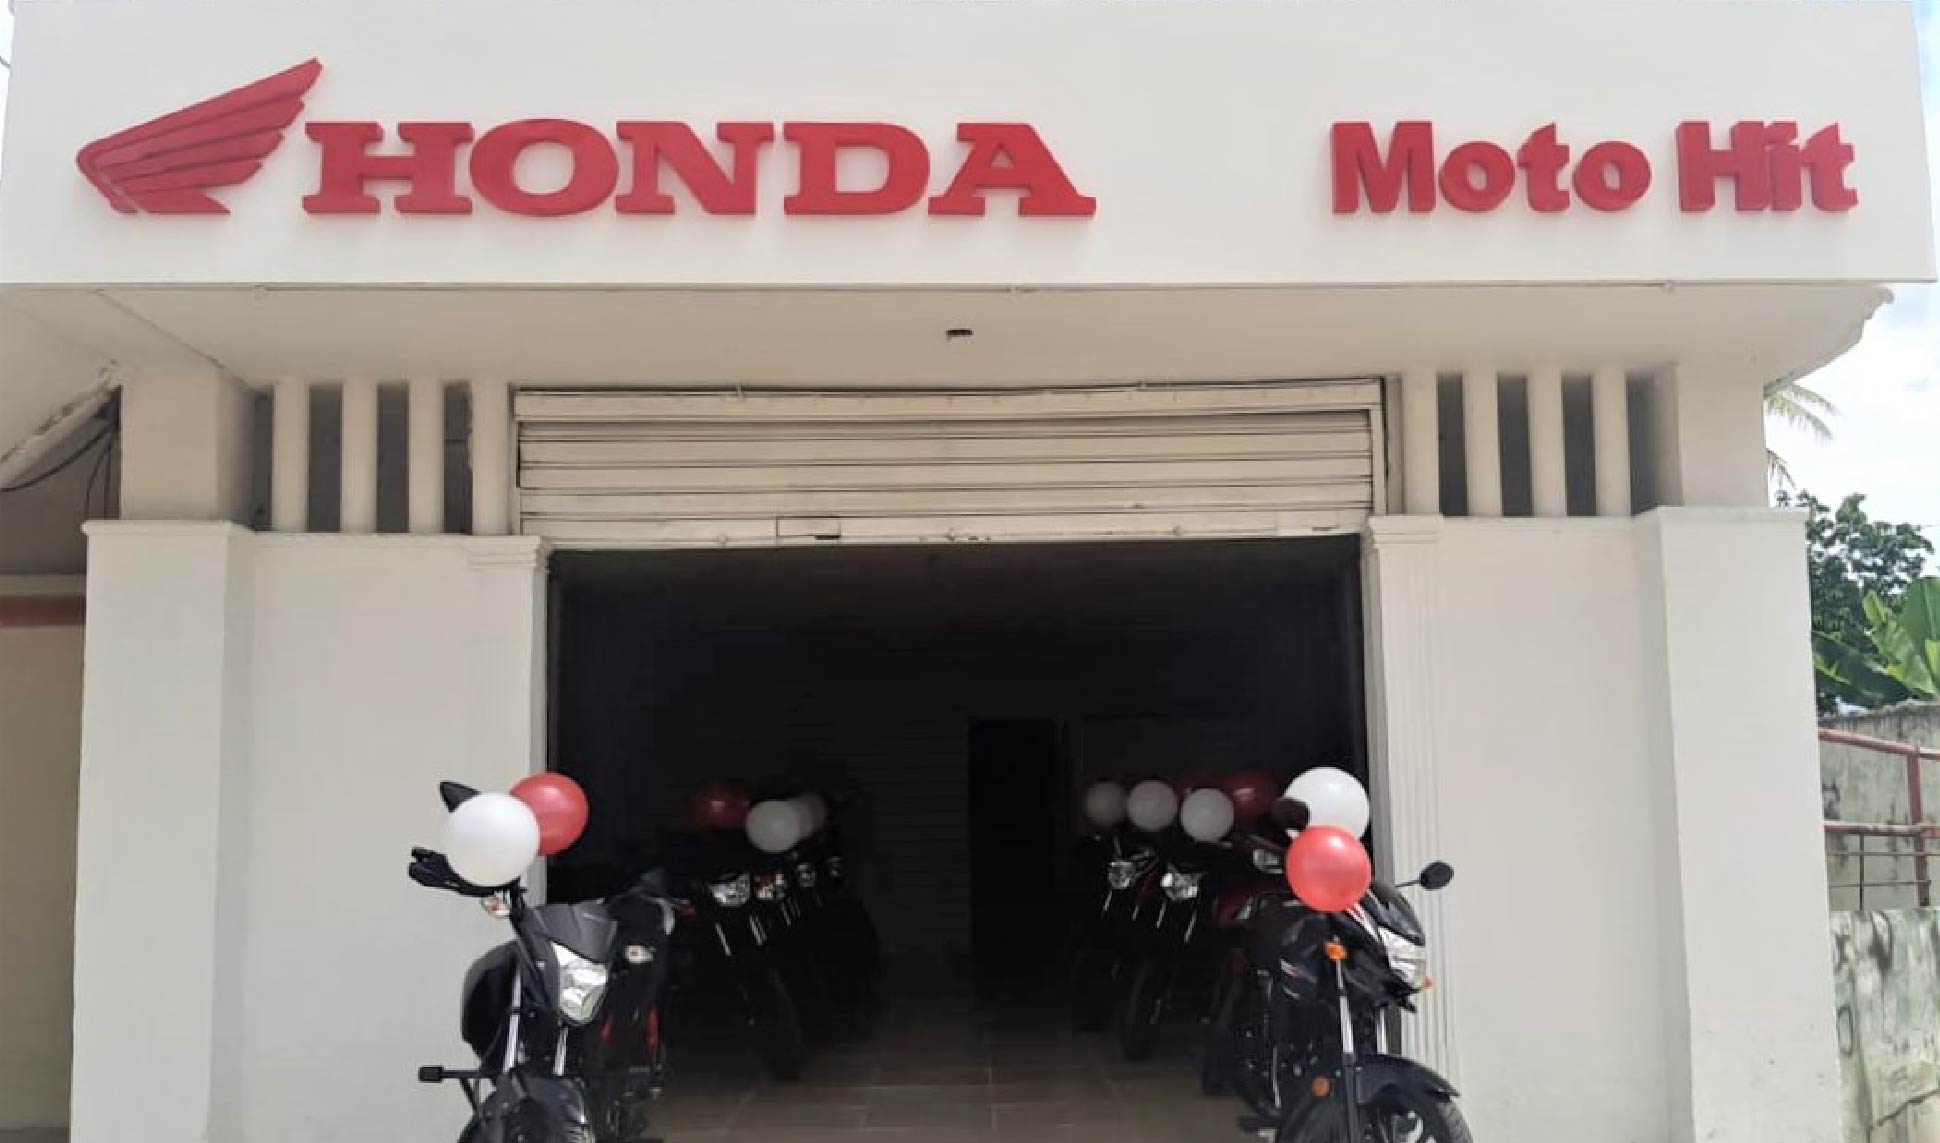 Moto Hit Honda San Bernardo del Viento